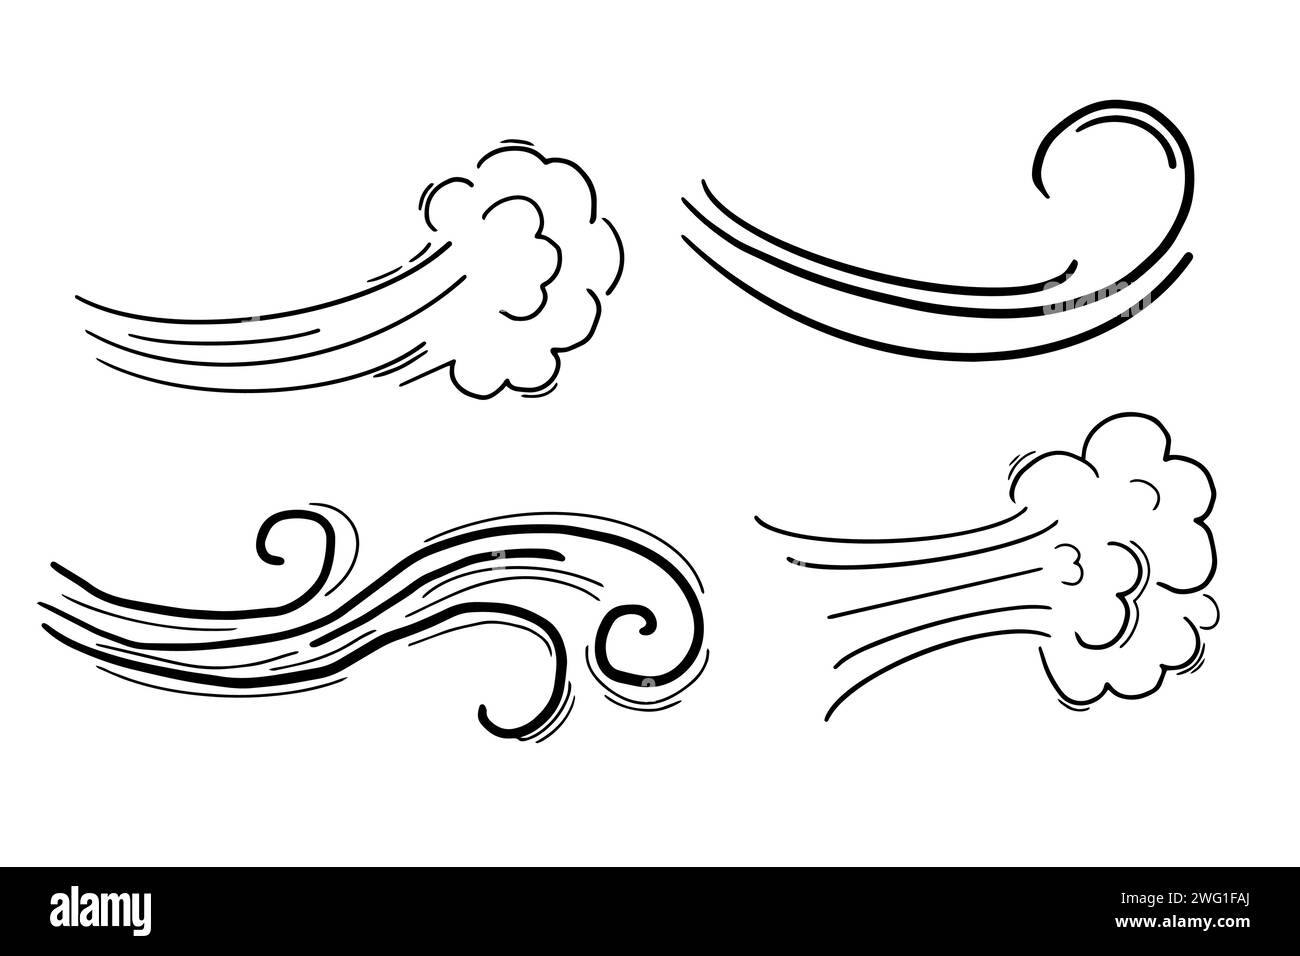 Windbewegung Doodle Line Swirl Hand gezeichneter Dampf Wetterstoß isoliert auf weißem Hintergrund. Element für die Atmosphäre. Vektorabbildung Stock Vektor